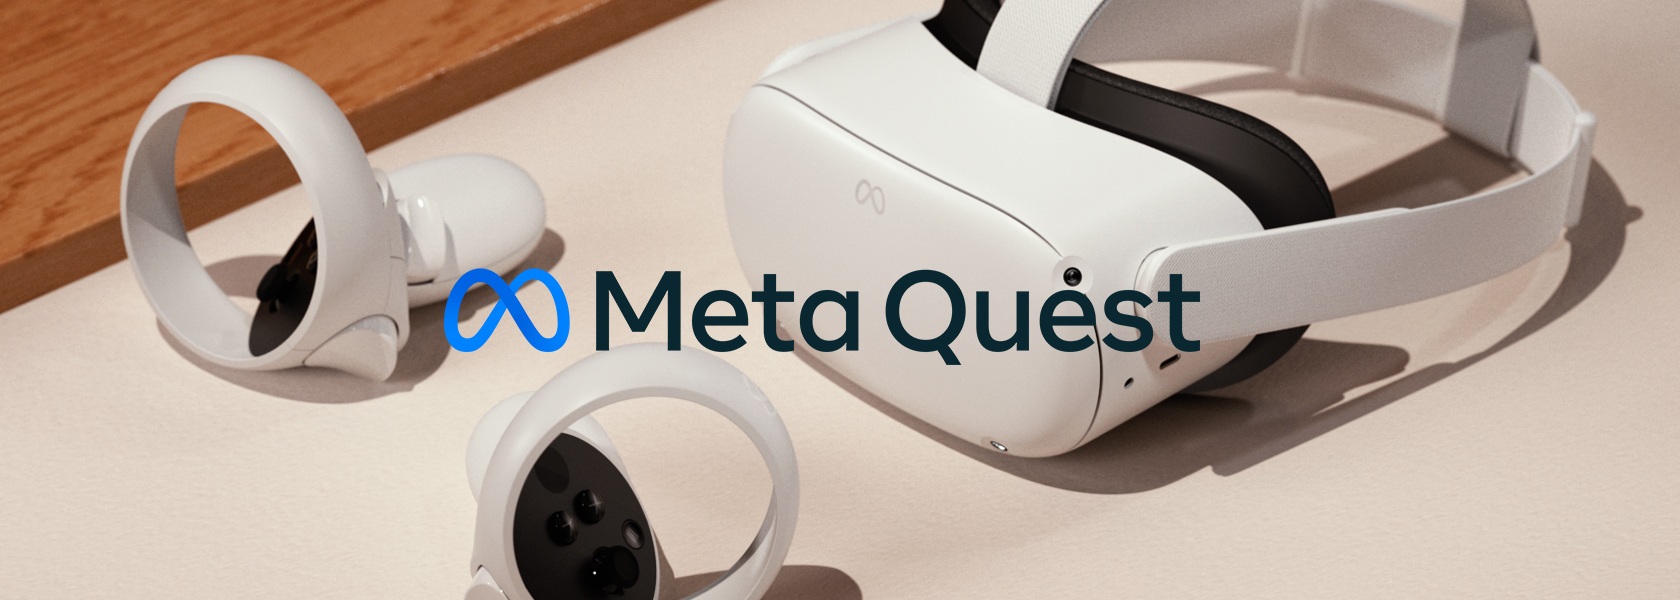 Meta Quest 2 - 完全ワイヤレスのオールインワンVRヘッドセット